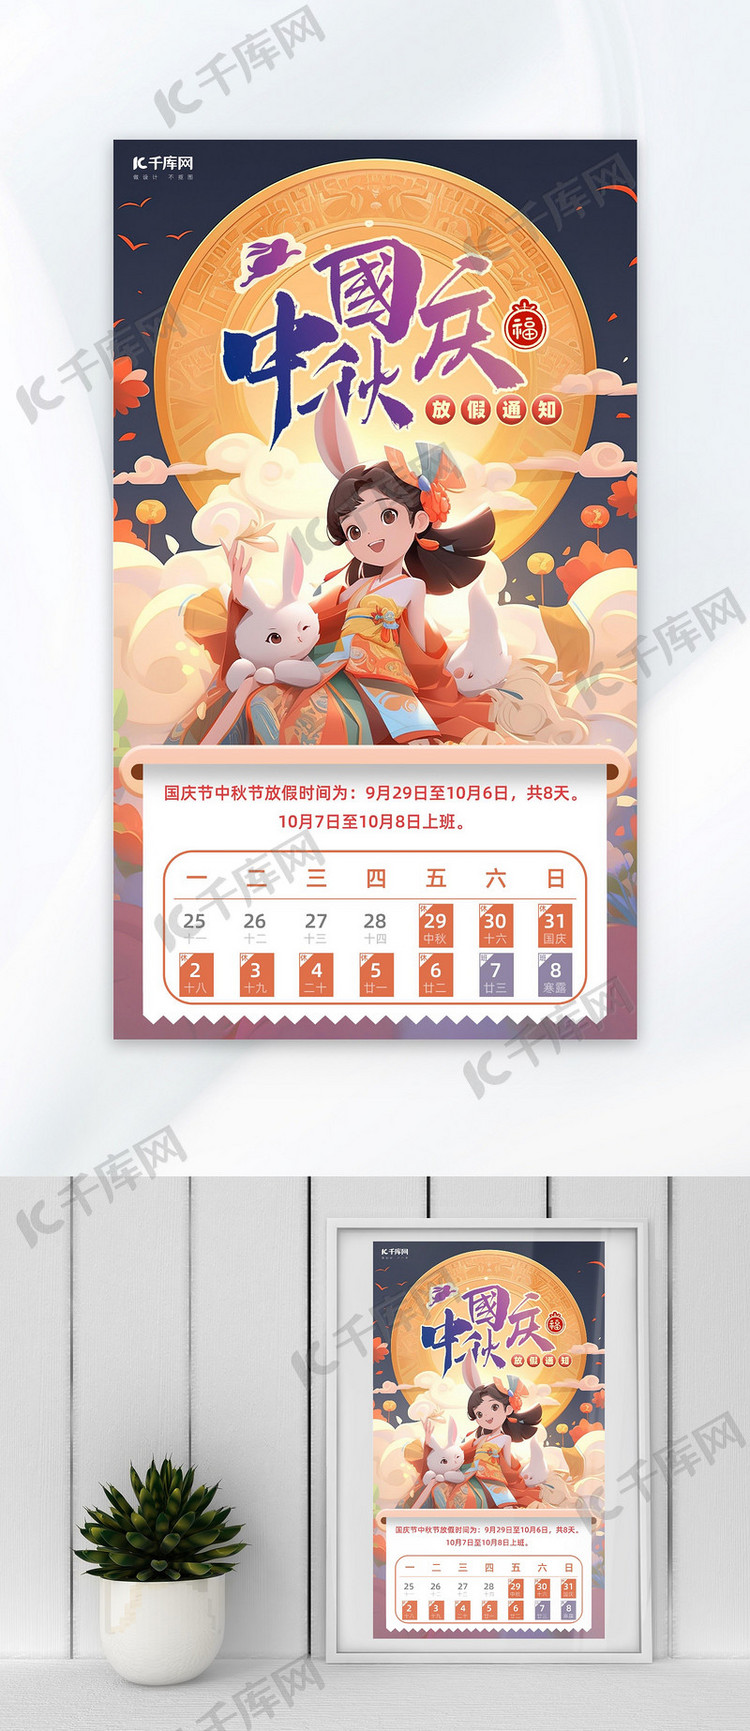 中秋节国庆节放假通知橙色AIGC广告海报